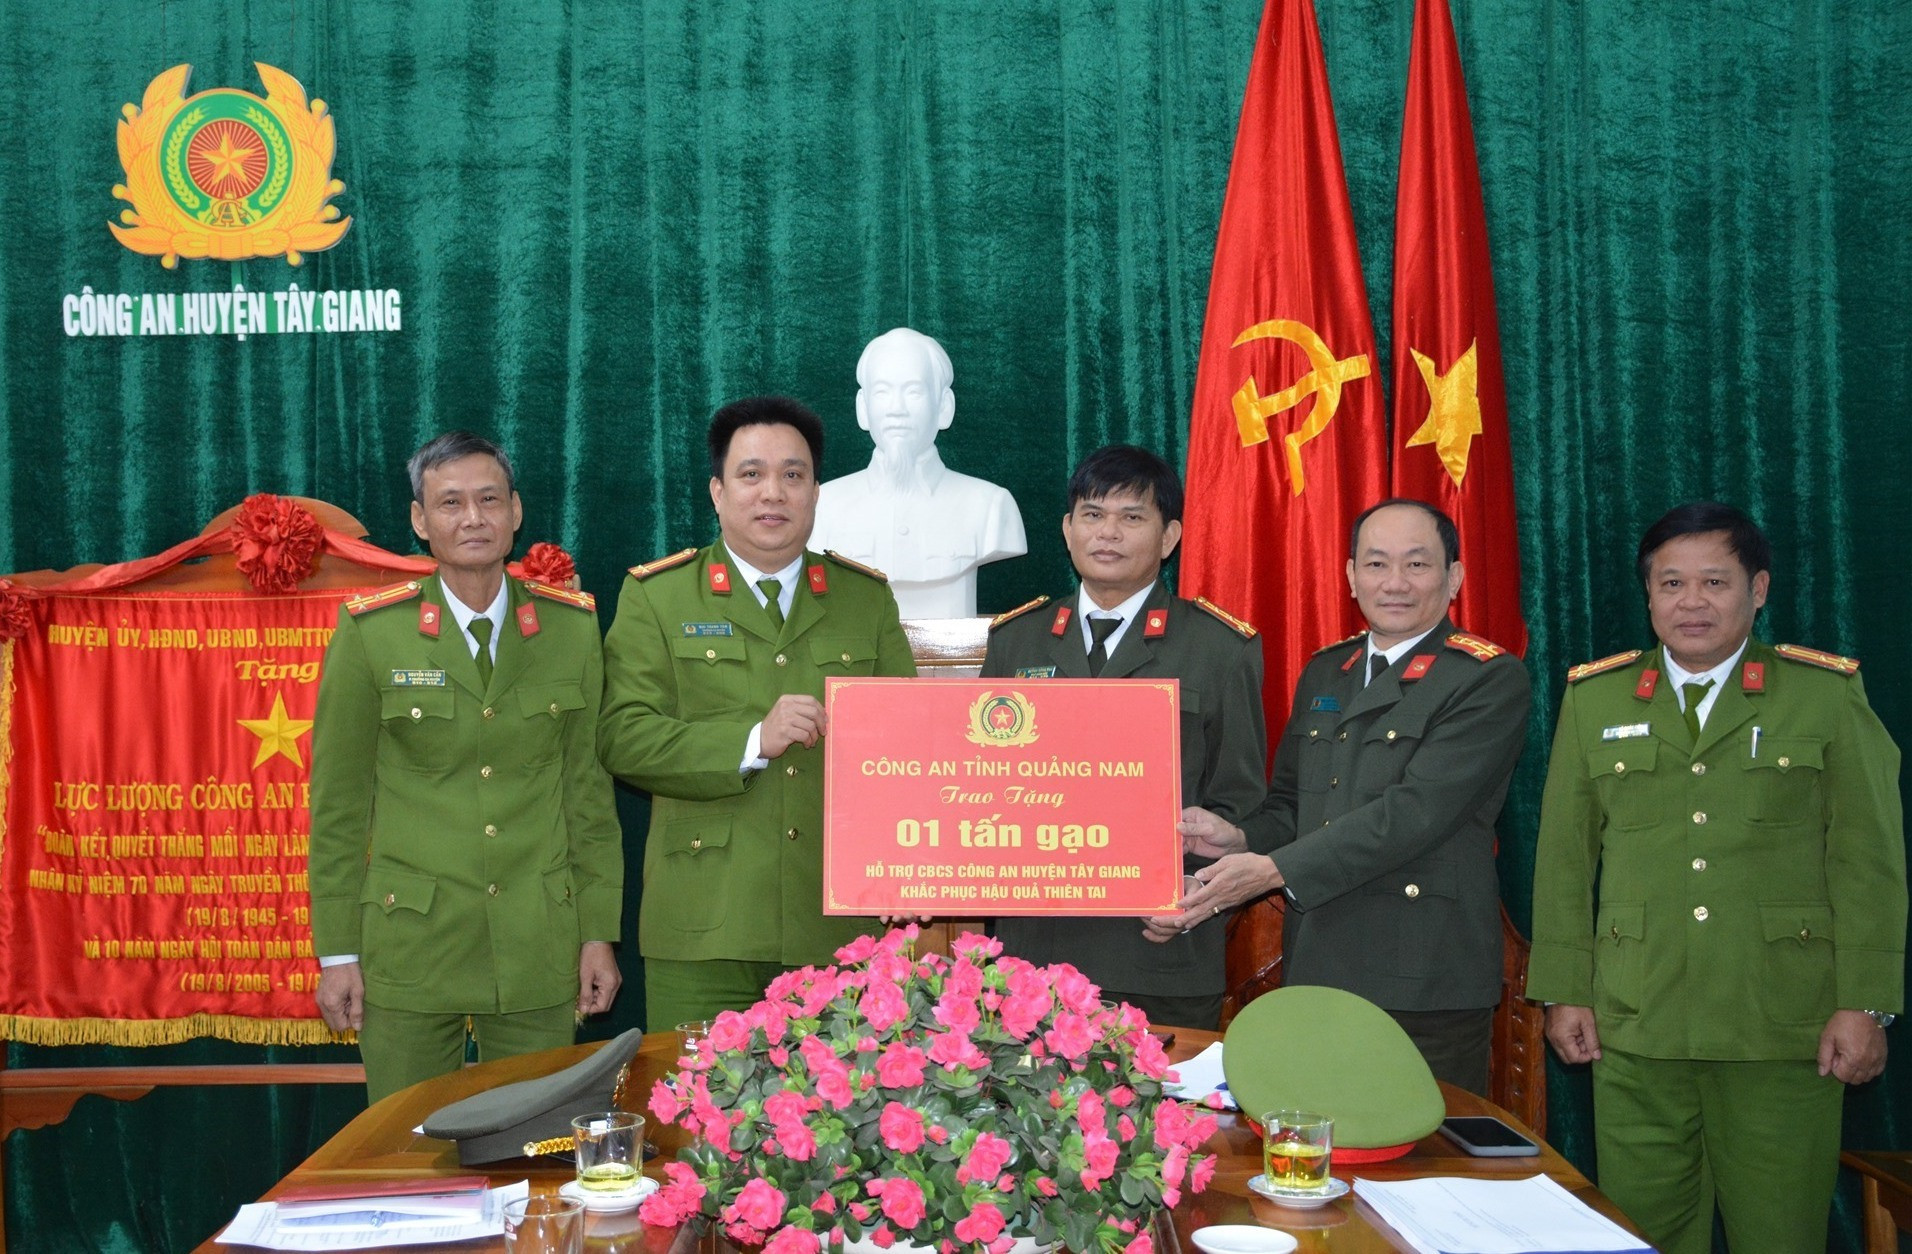 Lãnh đạo Công an tỉnh (bên phải) tặng bảng tượng trưng cho Công an Tây Giang